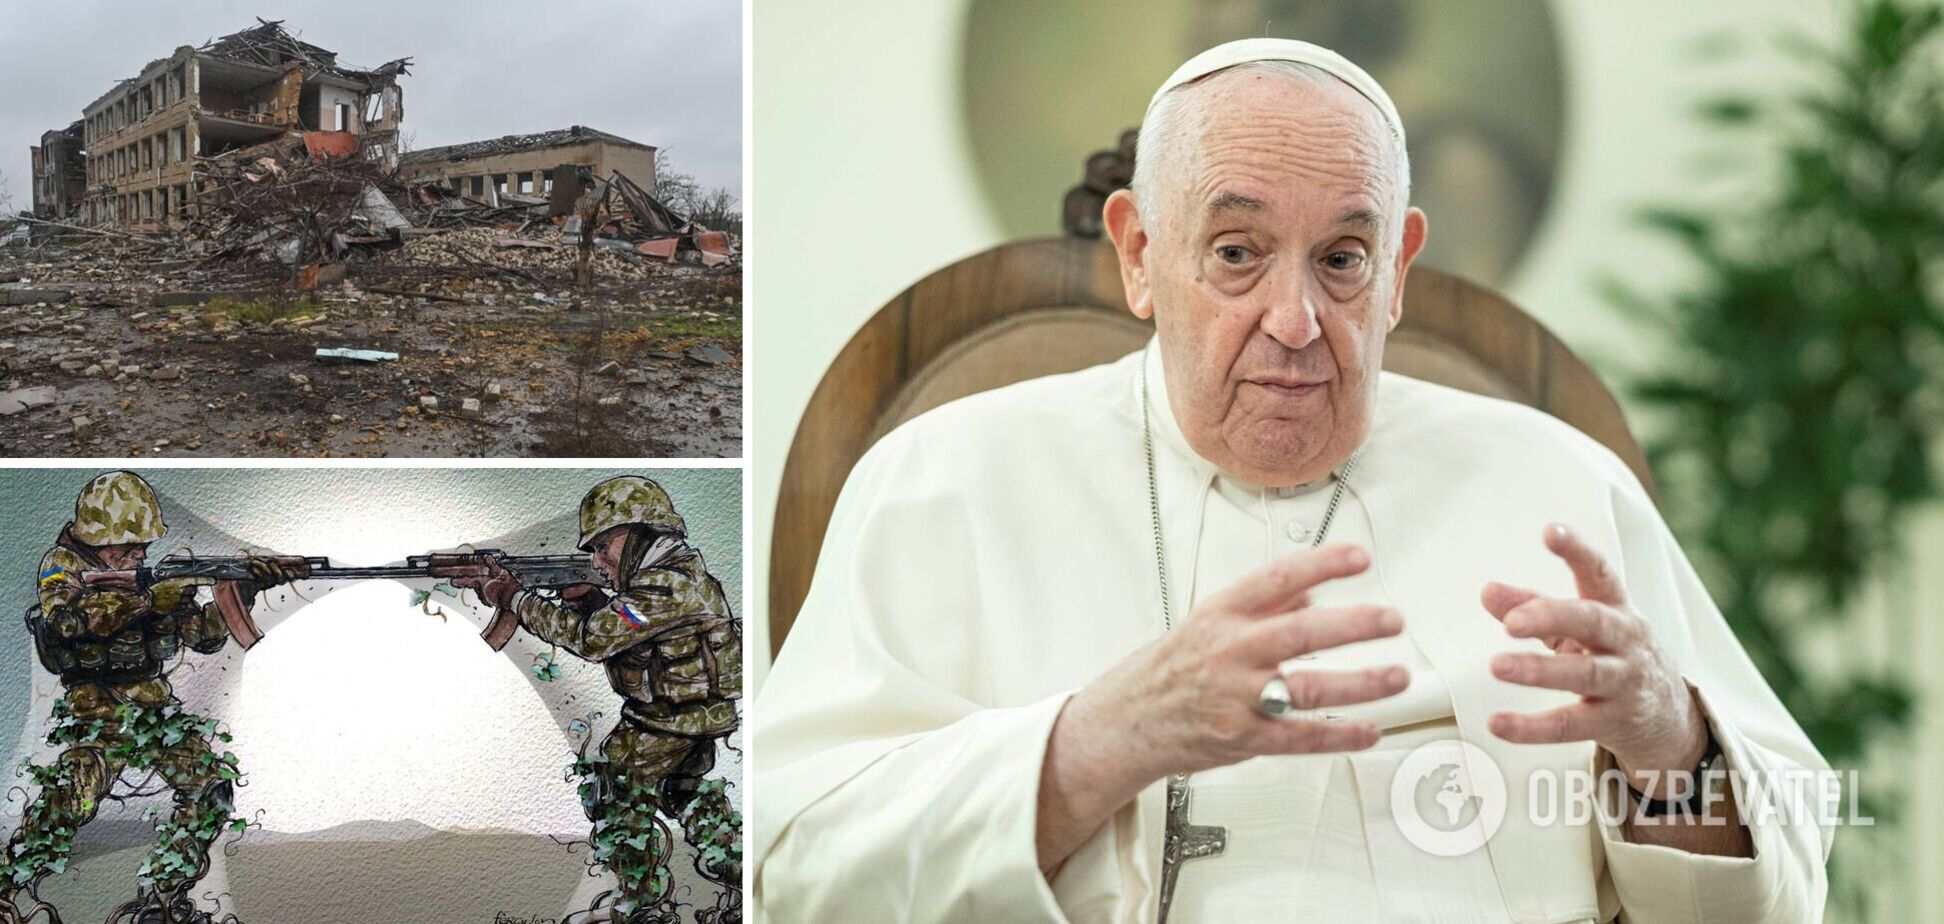 'На карту поставлено много': Папа Римский назвал войну в Украине 'мировой' и сделал прогноз о ее продолжительности